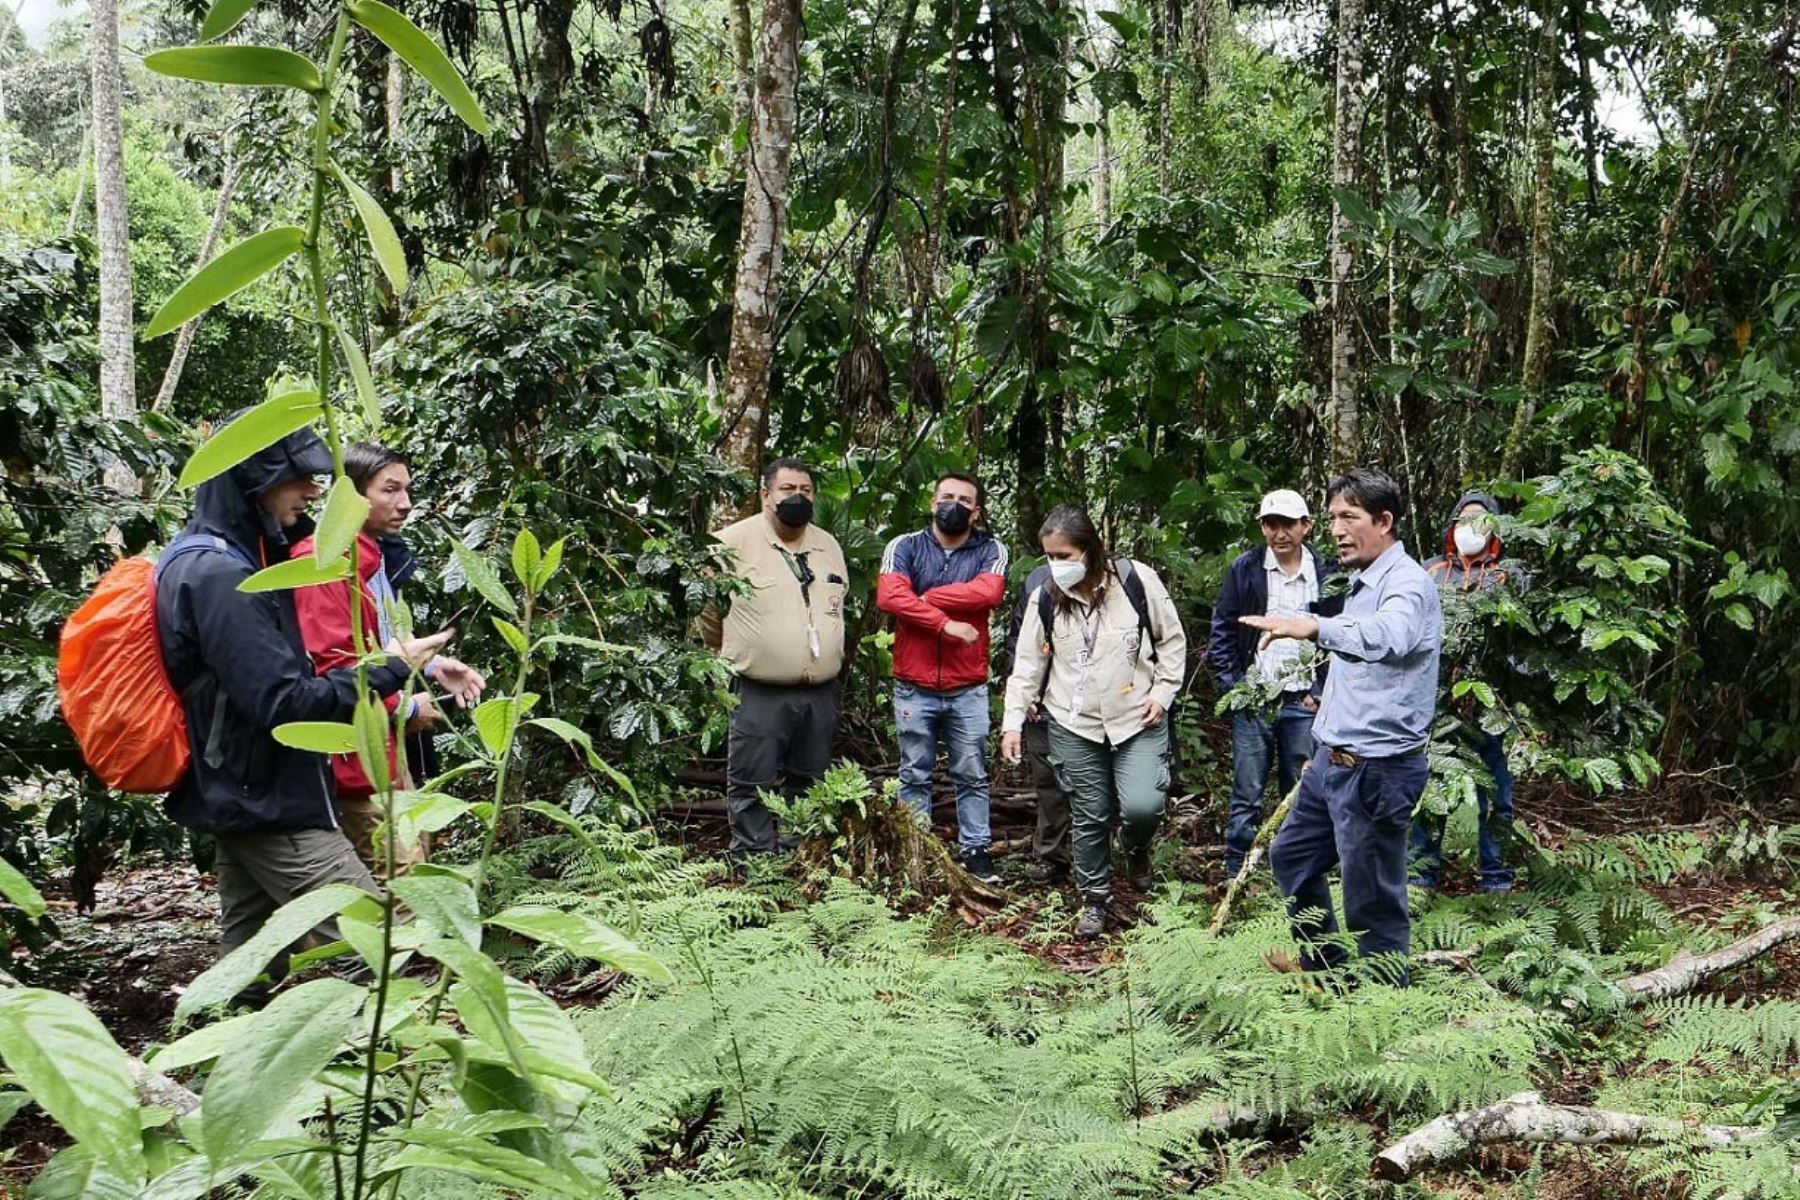 En el bosque de protección Alto Mayo se han registrado más de 500 especies de aves y alrededor de 300 especies de orquídeas. Foto: ANDINA/Sernanp